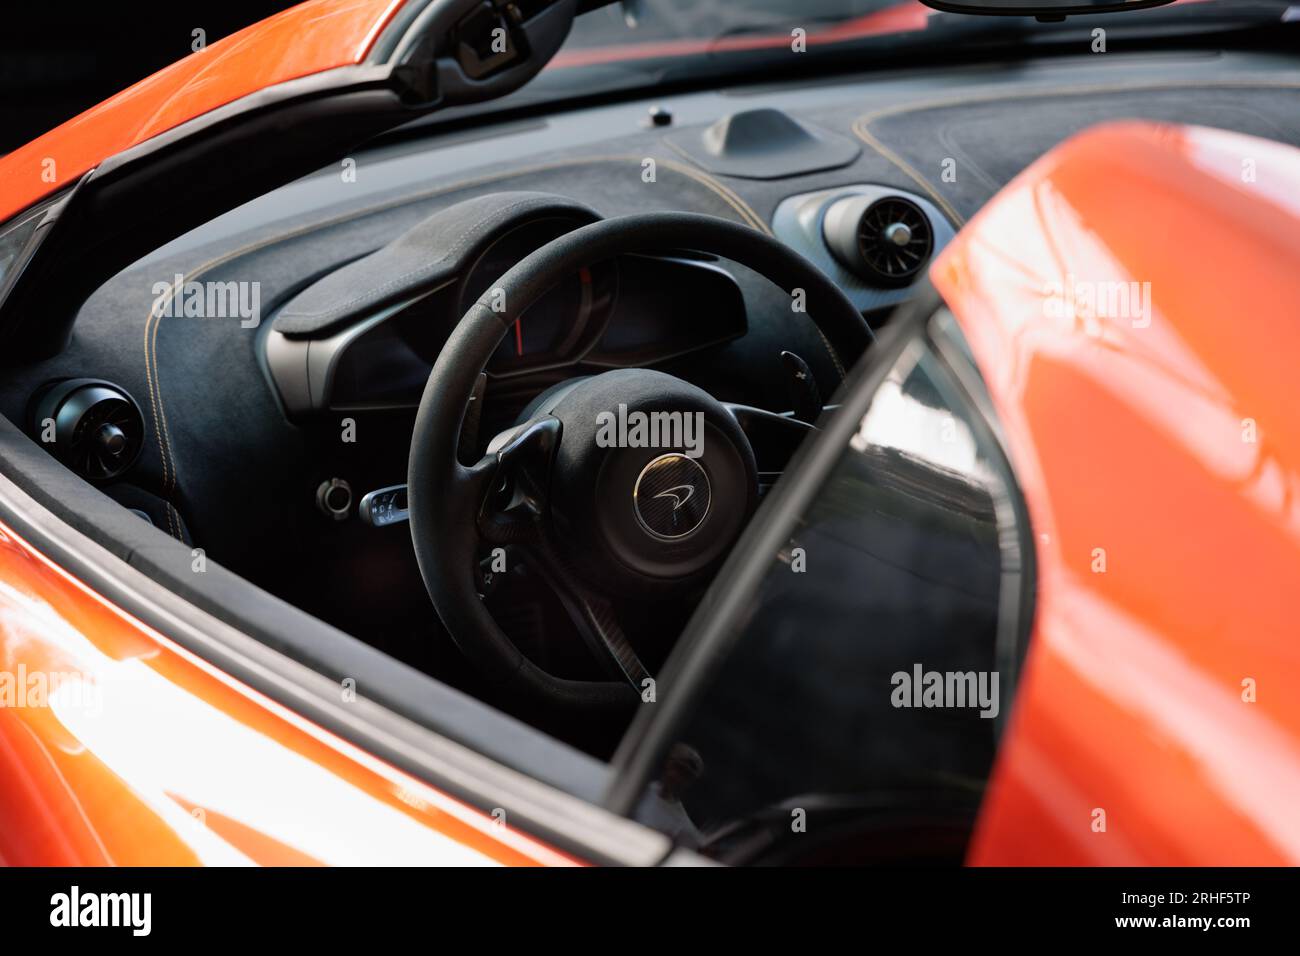 McLaren 675LT steering wheel and dials Stock Photo